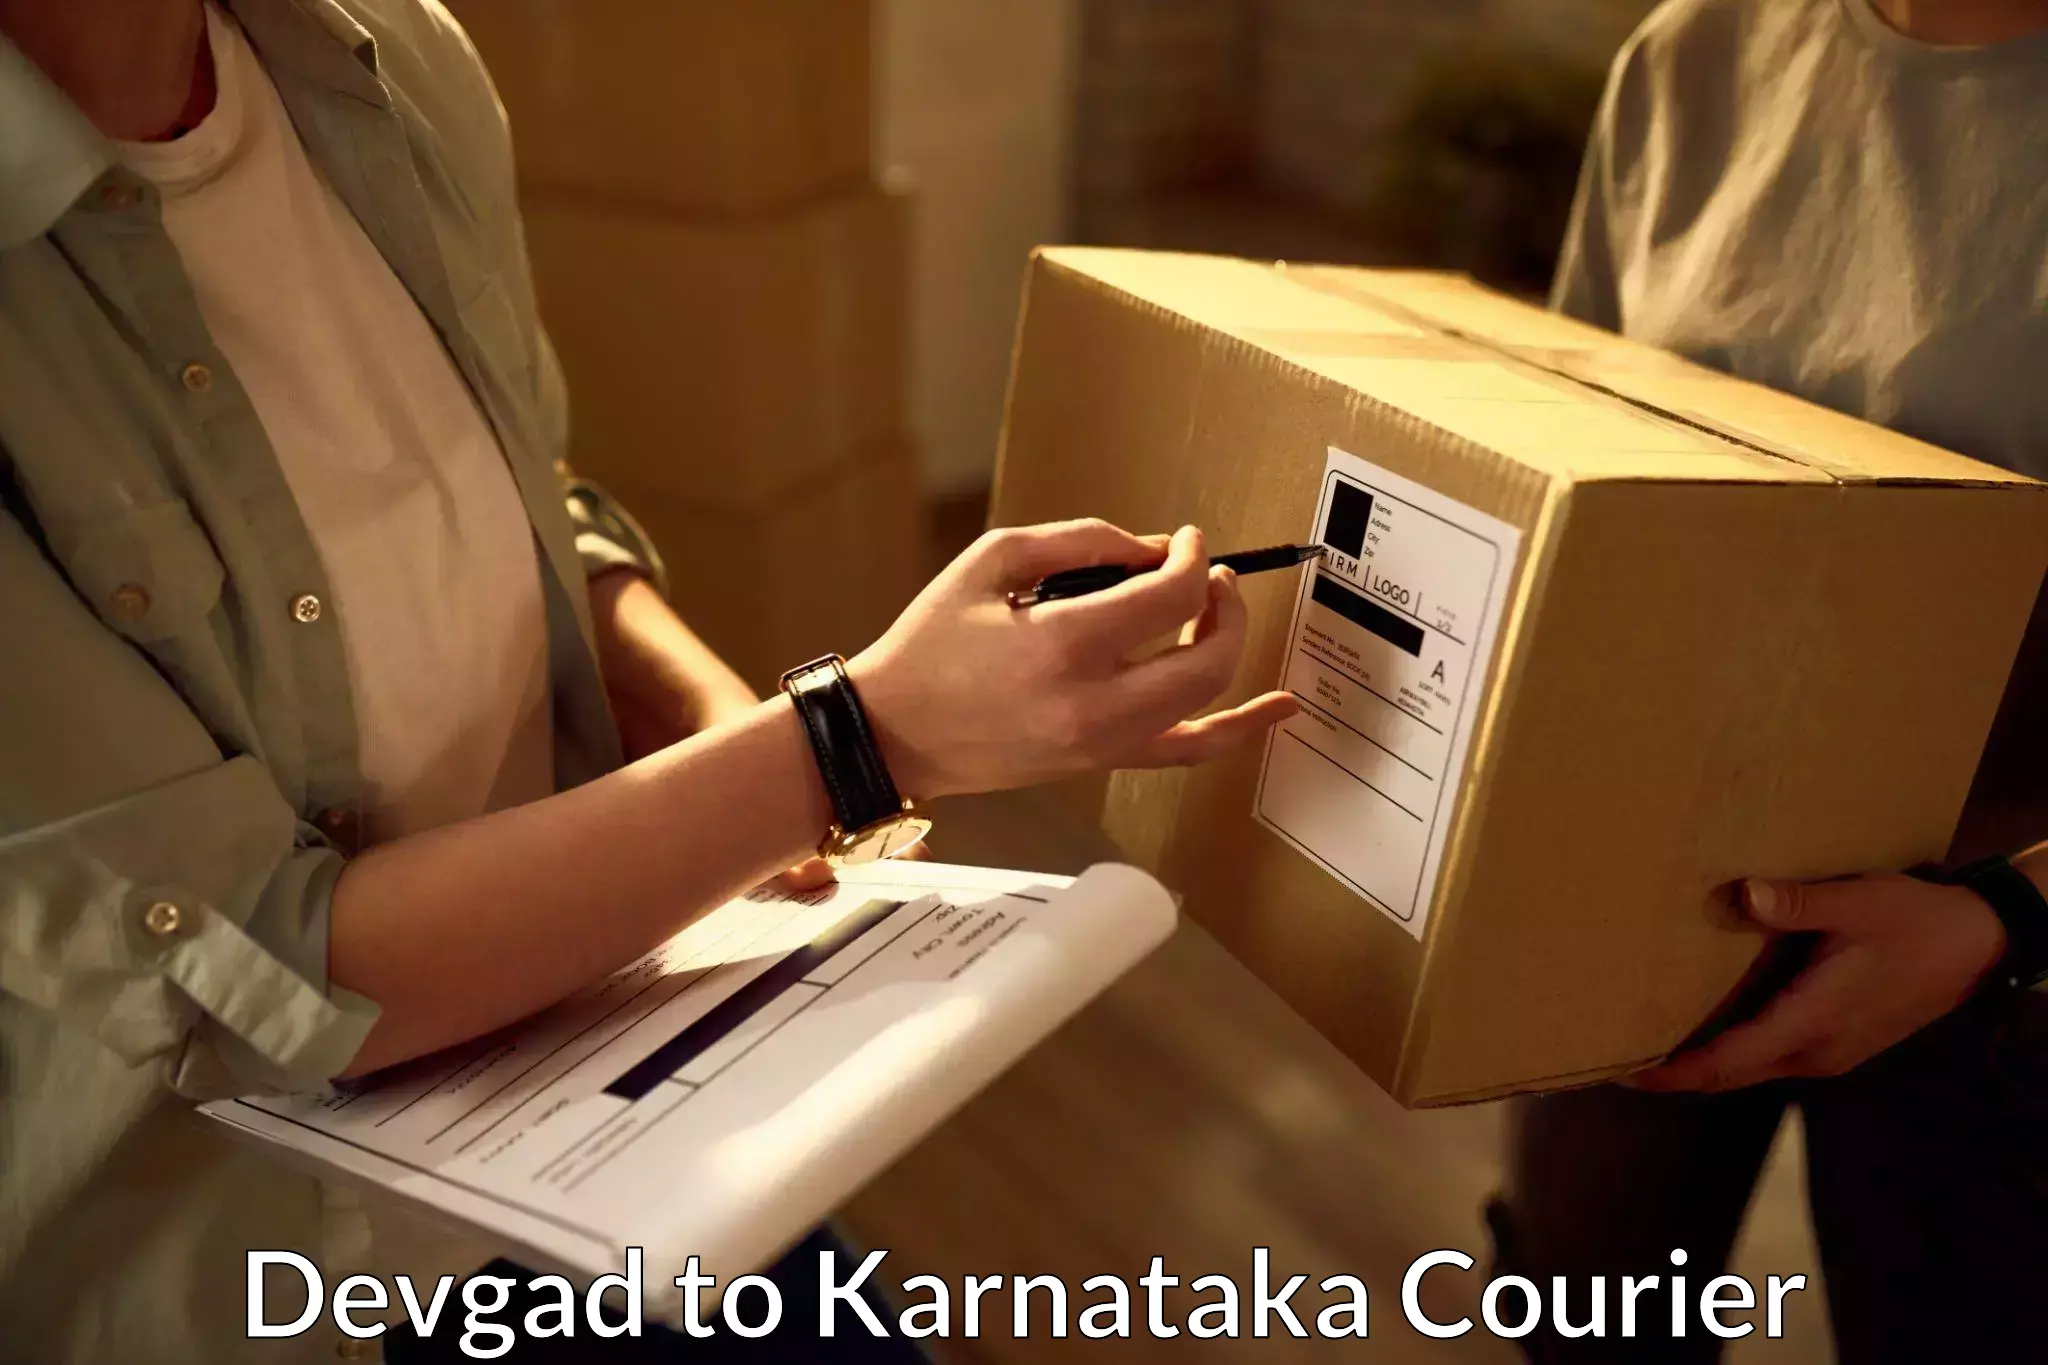 Courier service comparison Devgad to Mundgod